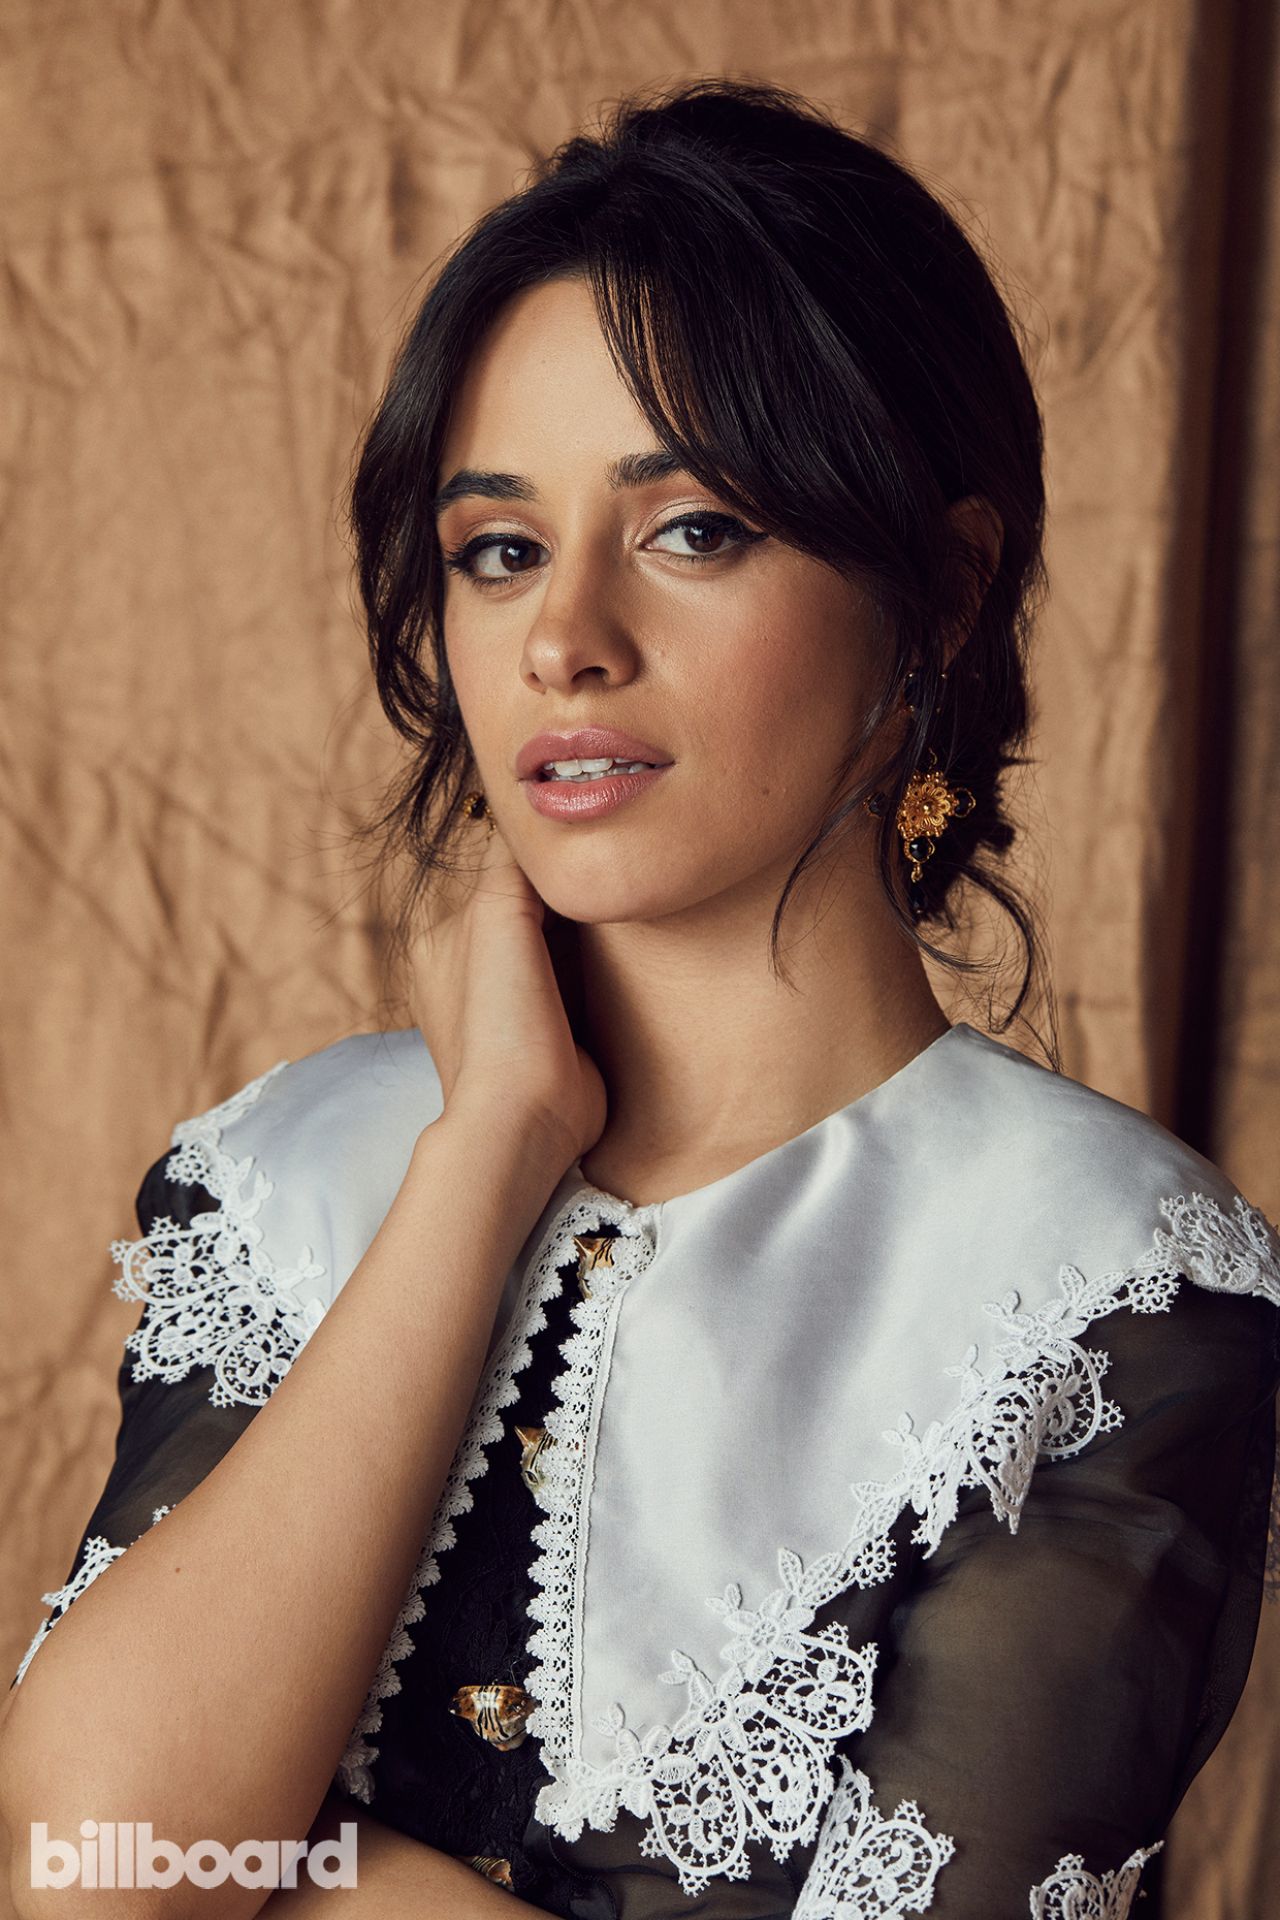 Camila Cabello - Billboard Women in Music 2017 Portraits1280 x 1920